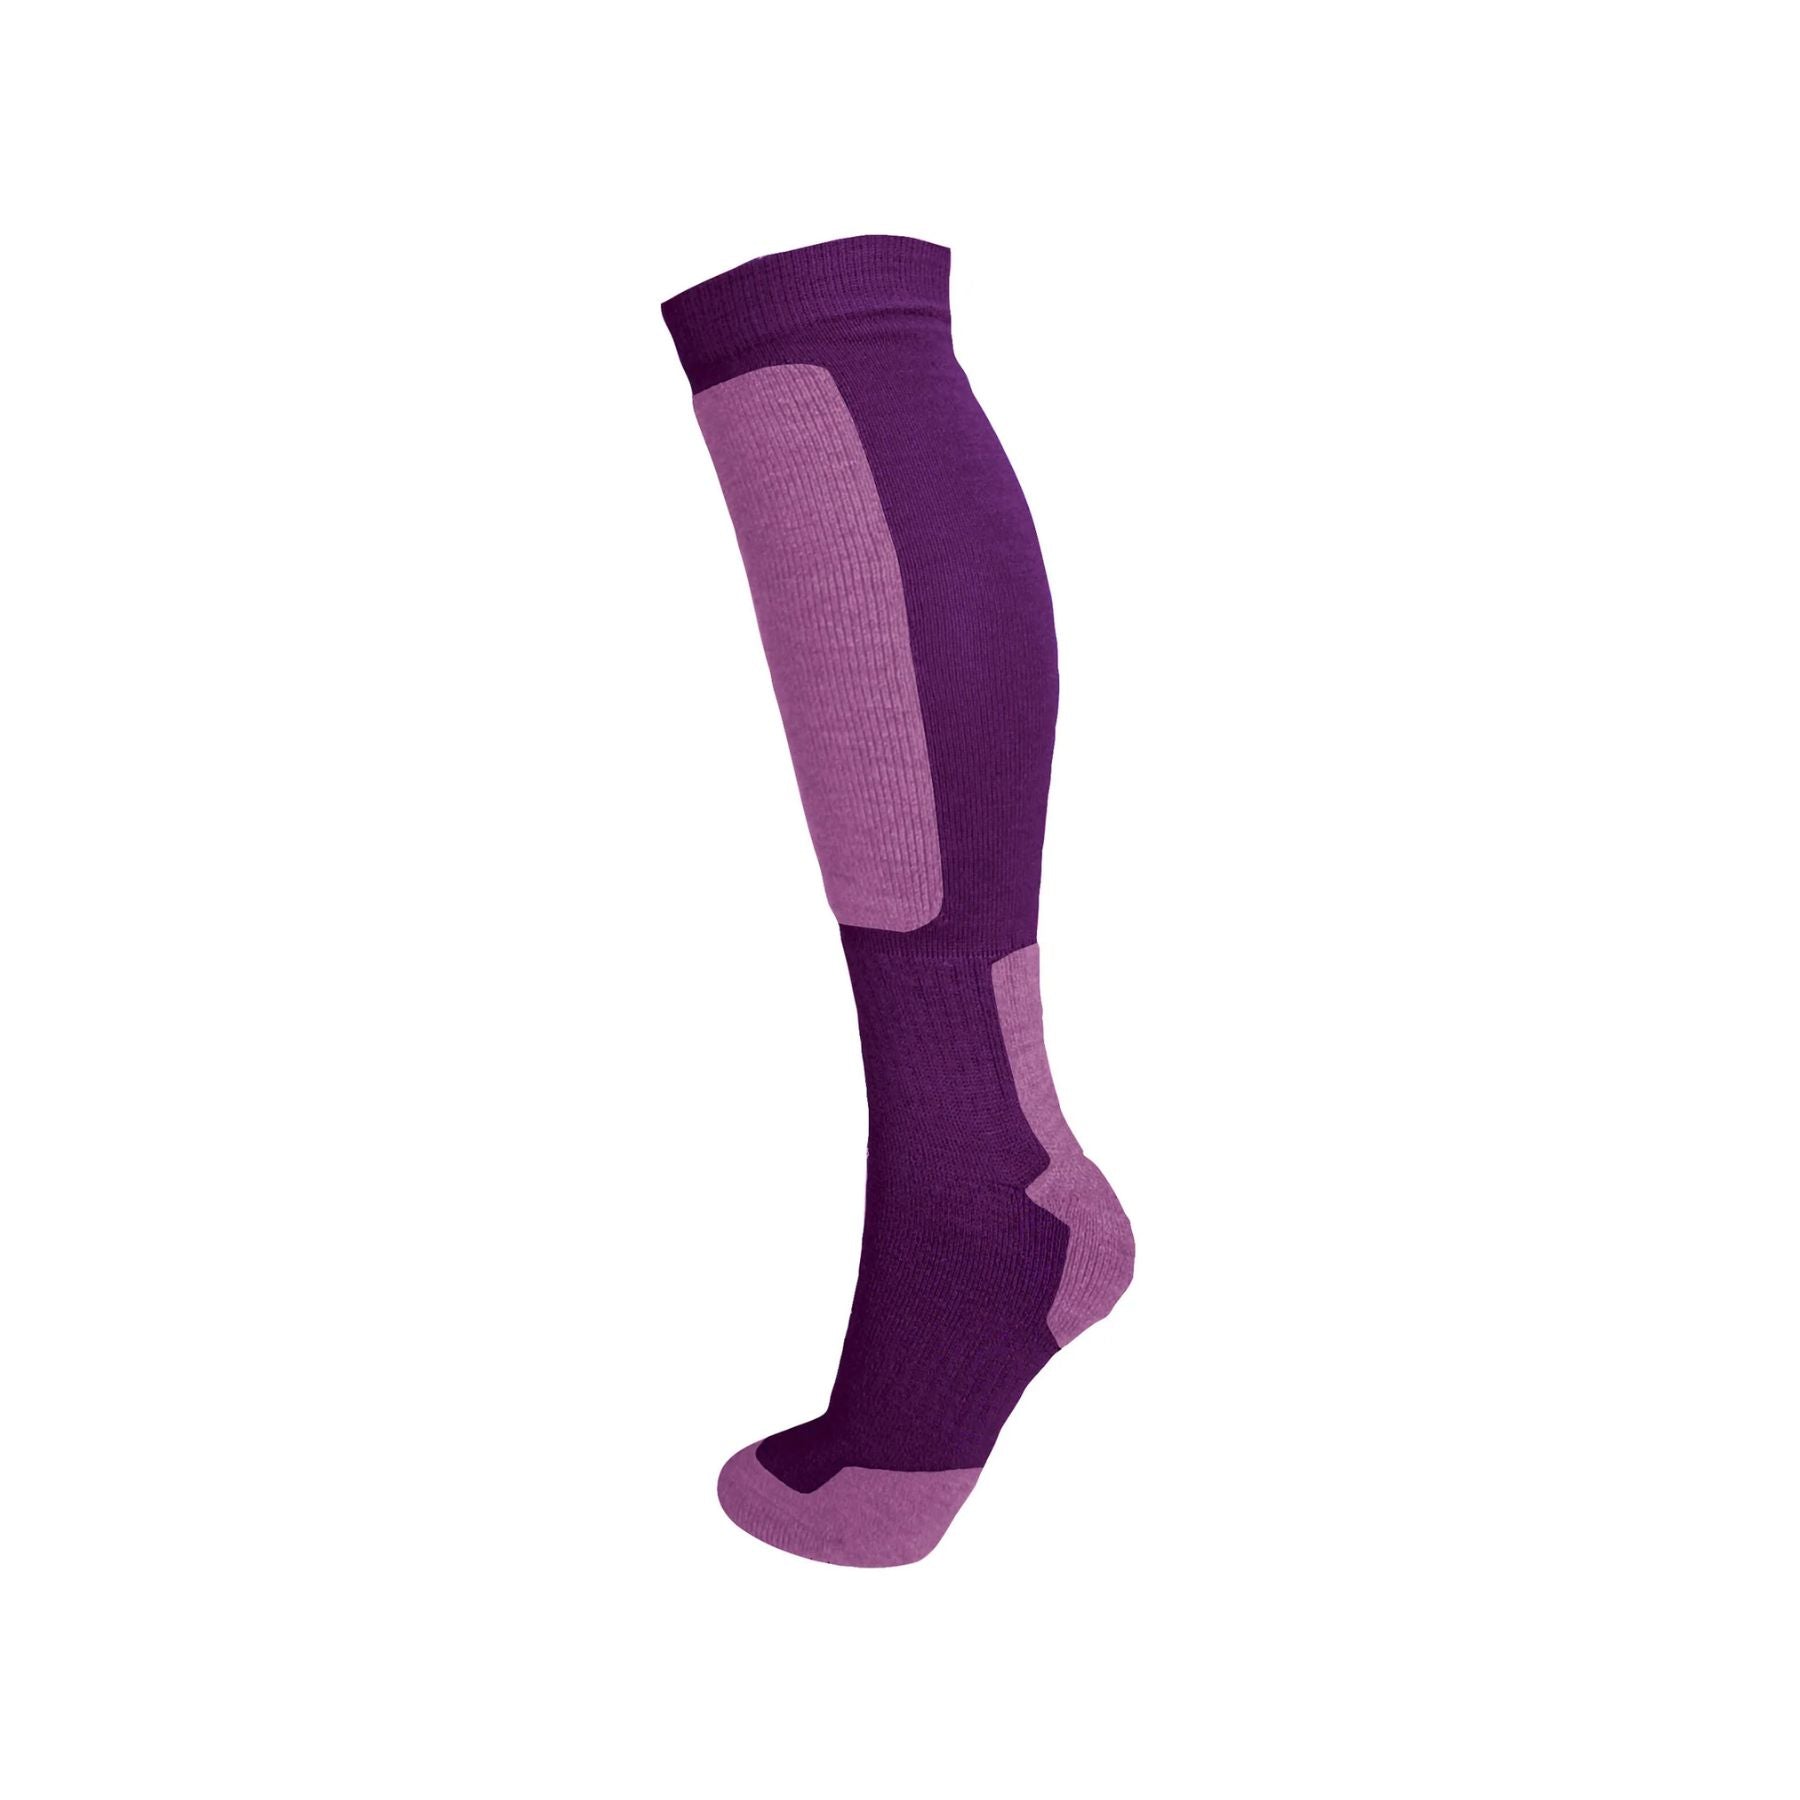 Manbi Snow-Tec Adult's Sock in Fig/Lilac